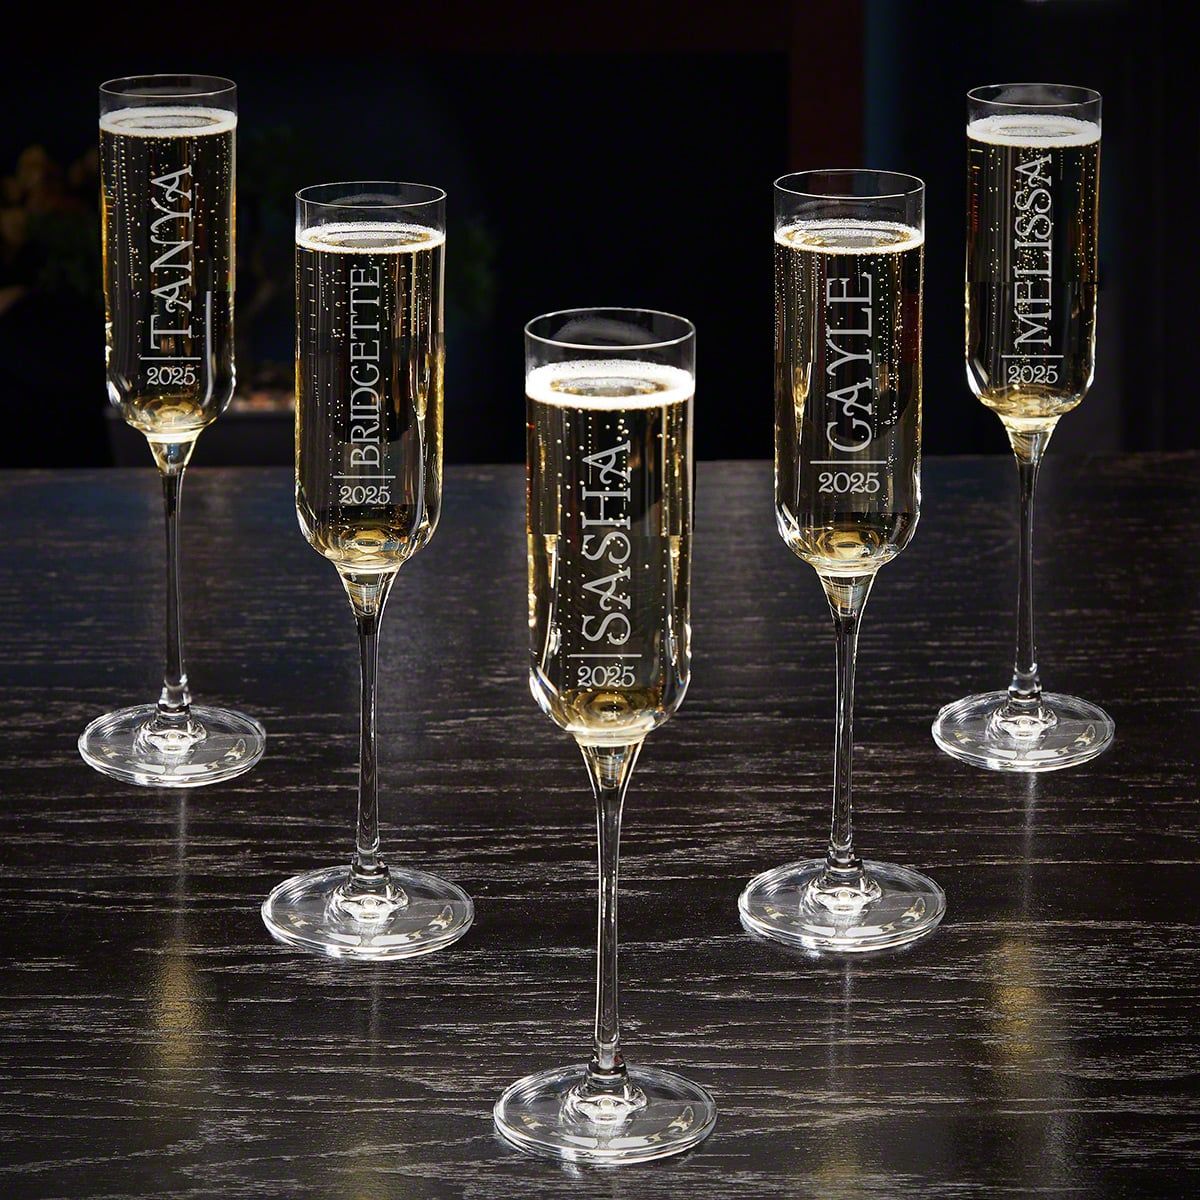 Custom Engraved Champagne Flute